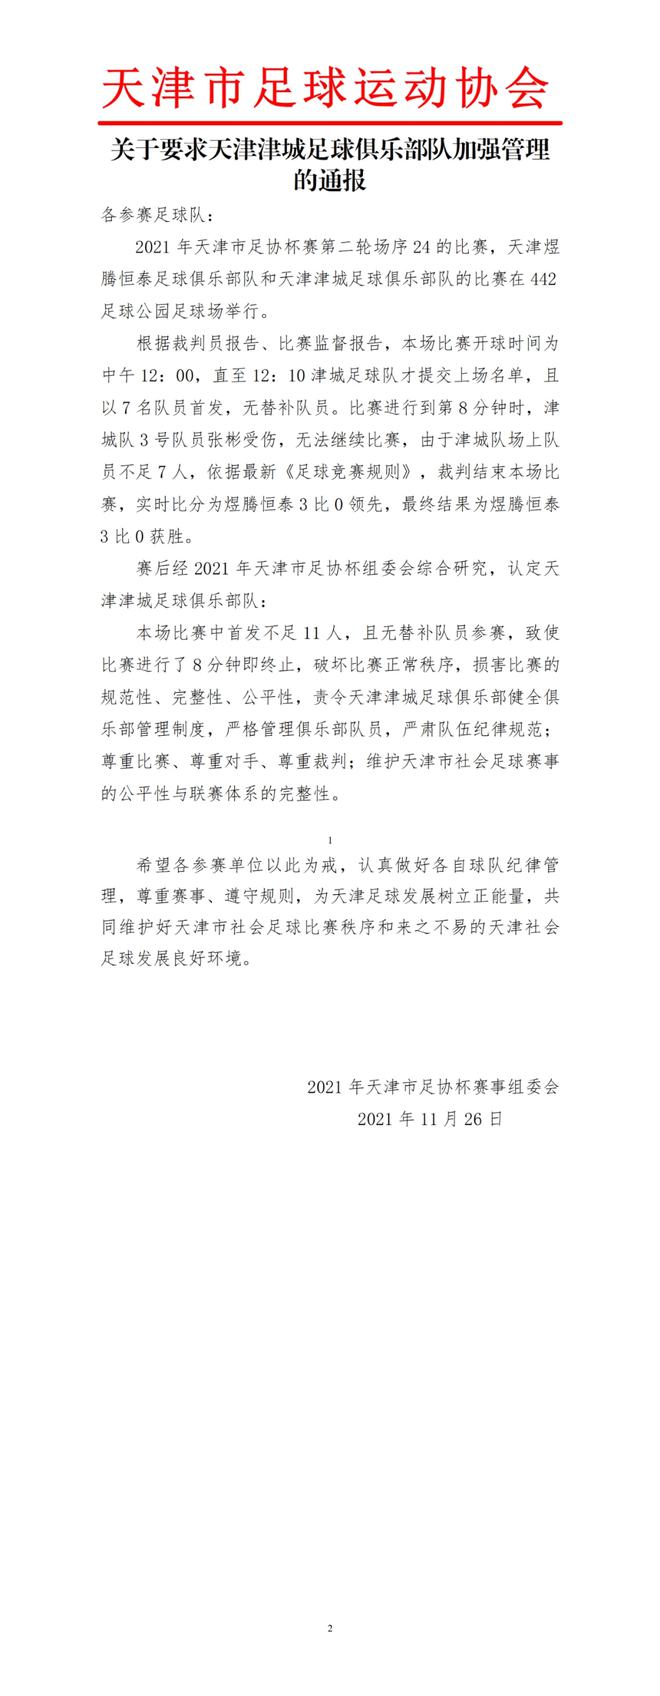 关于要求天津津城足球俱乐部队加强管理的通报